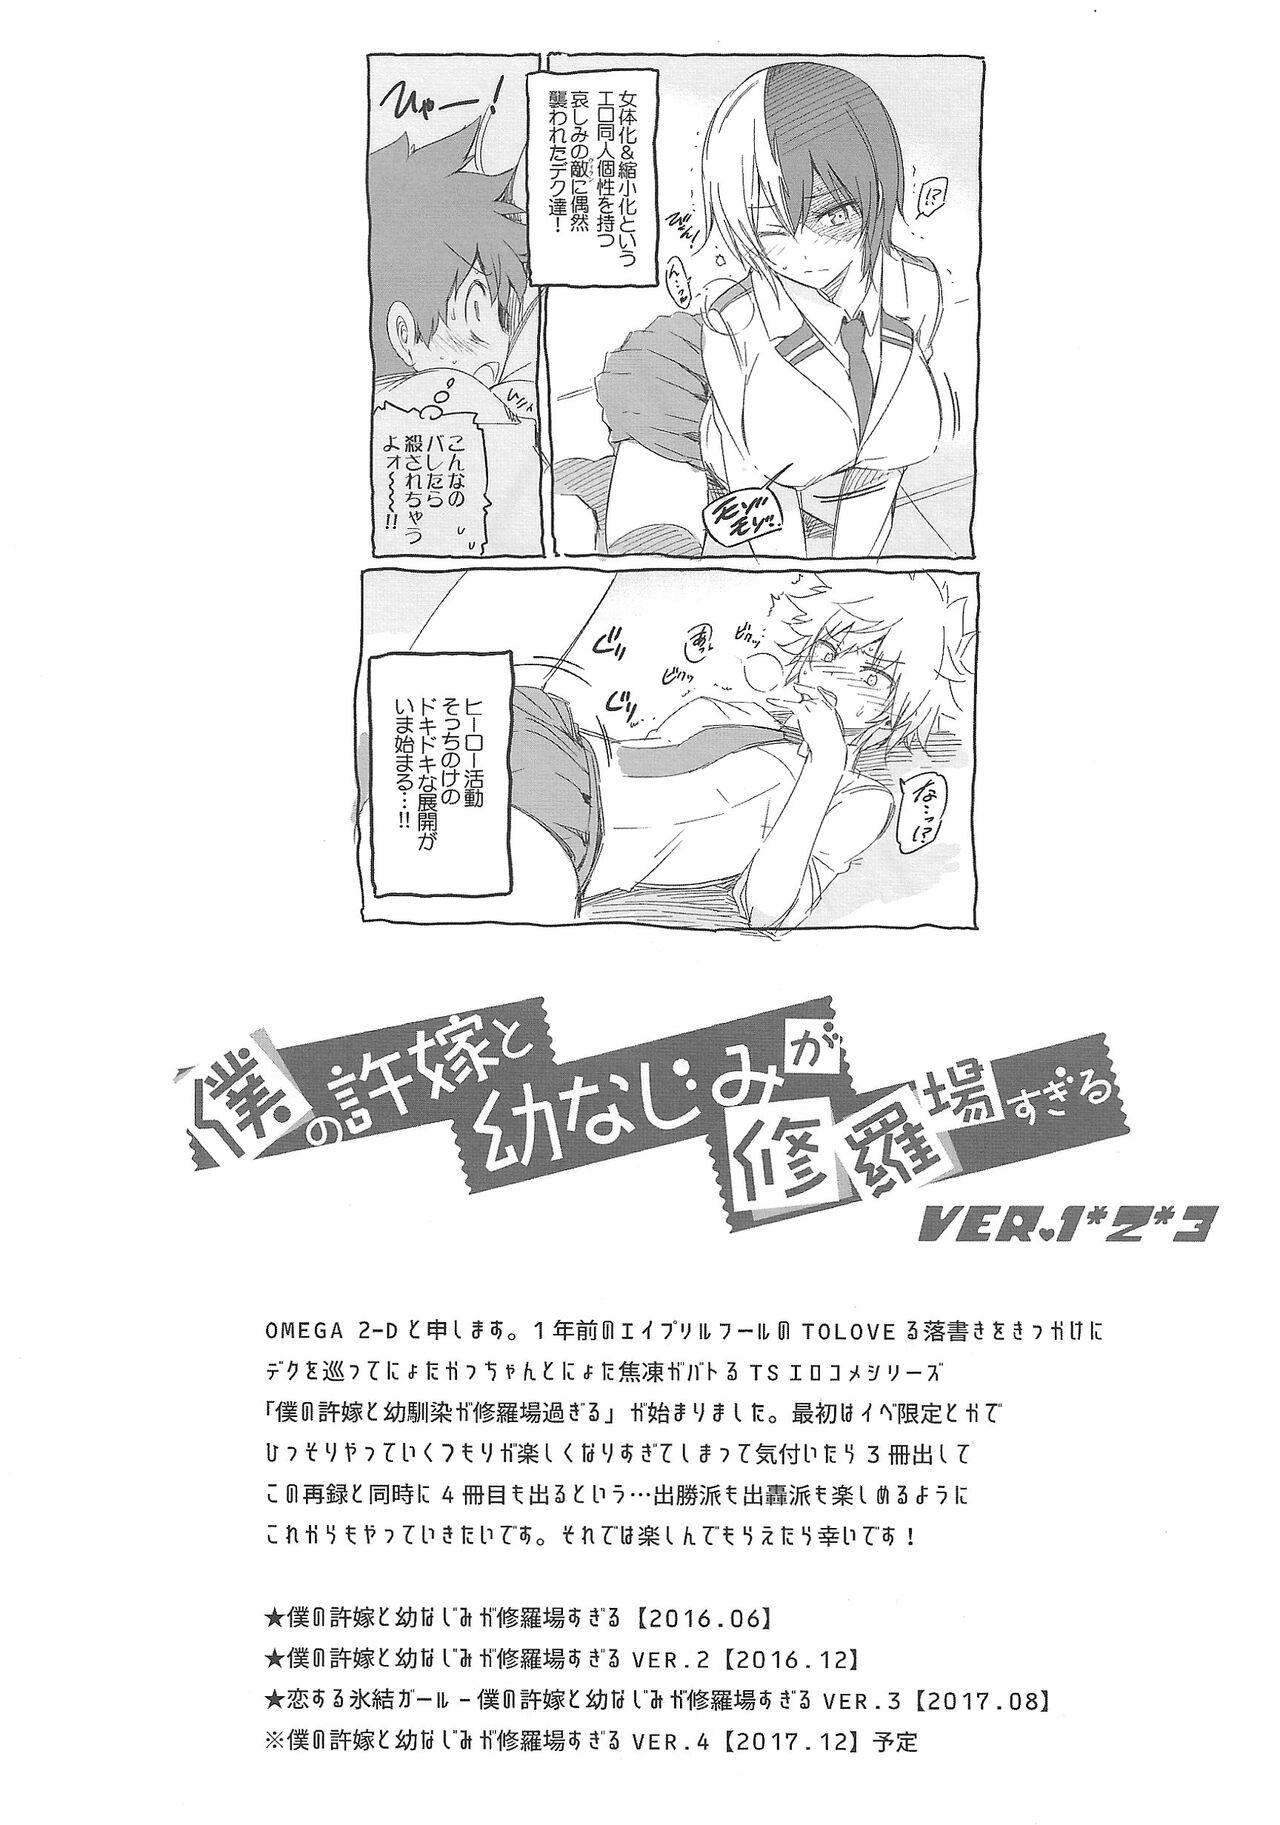 Boku no Iinazuke to Osananajimi ga Shuraba Sugiru Volume 1, 2 & 3 2